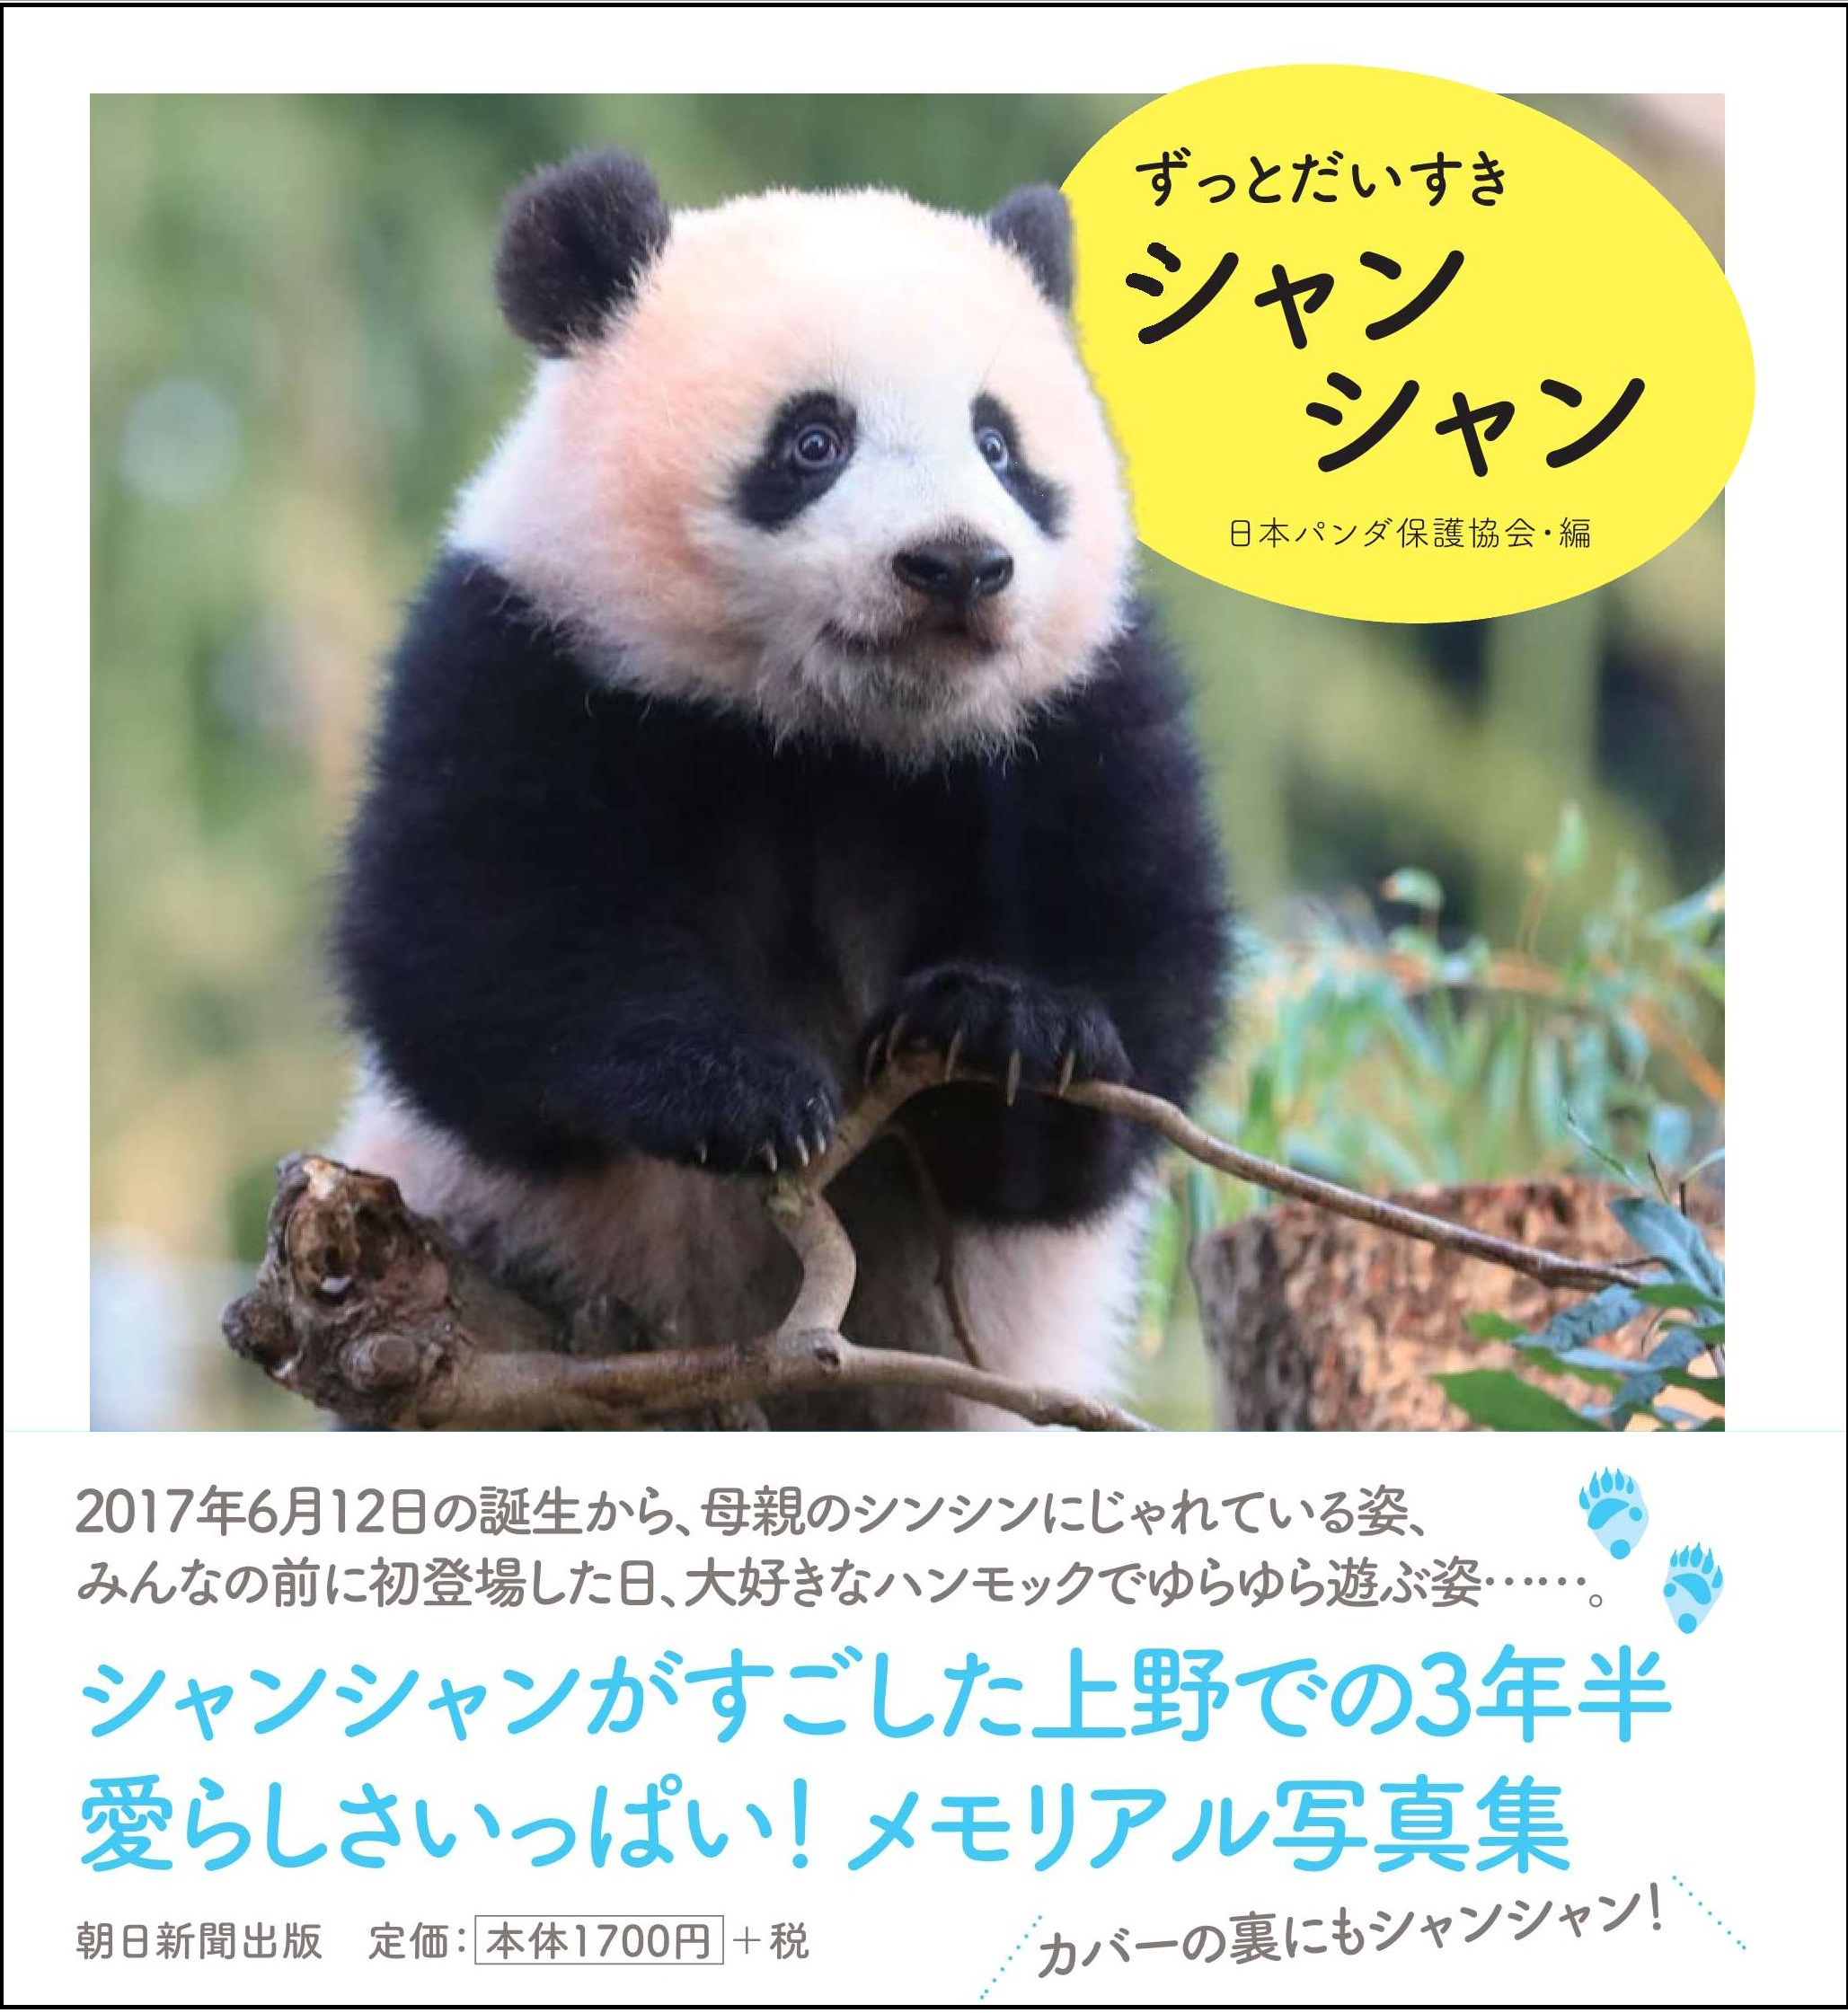 シャンシャン 上野動物園 パンダ 写真集 すくすく、シャンシャン 